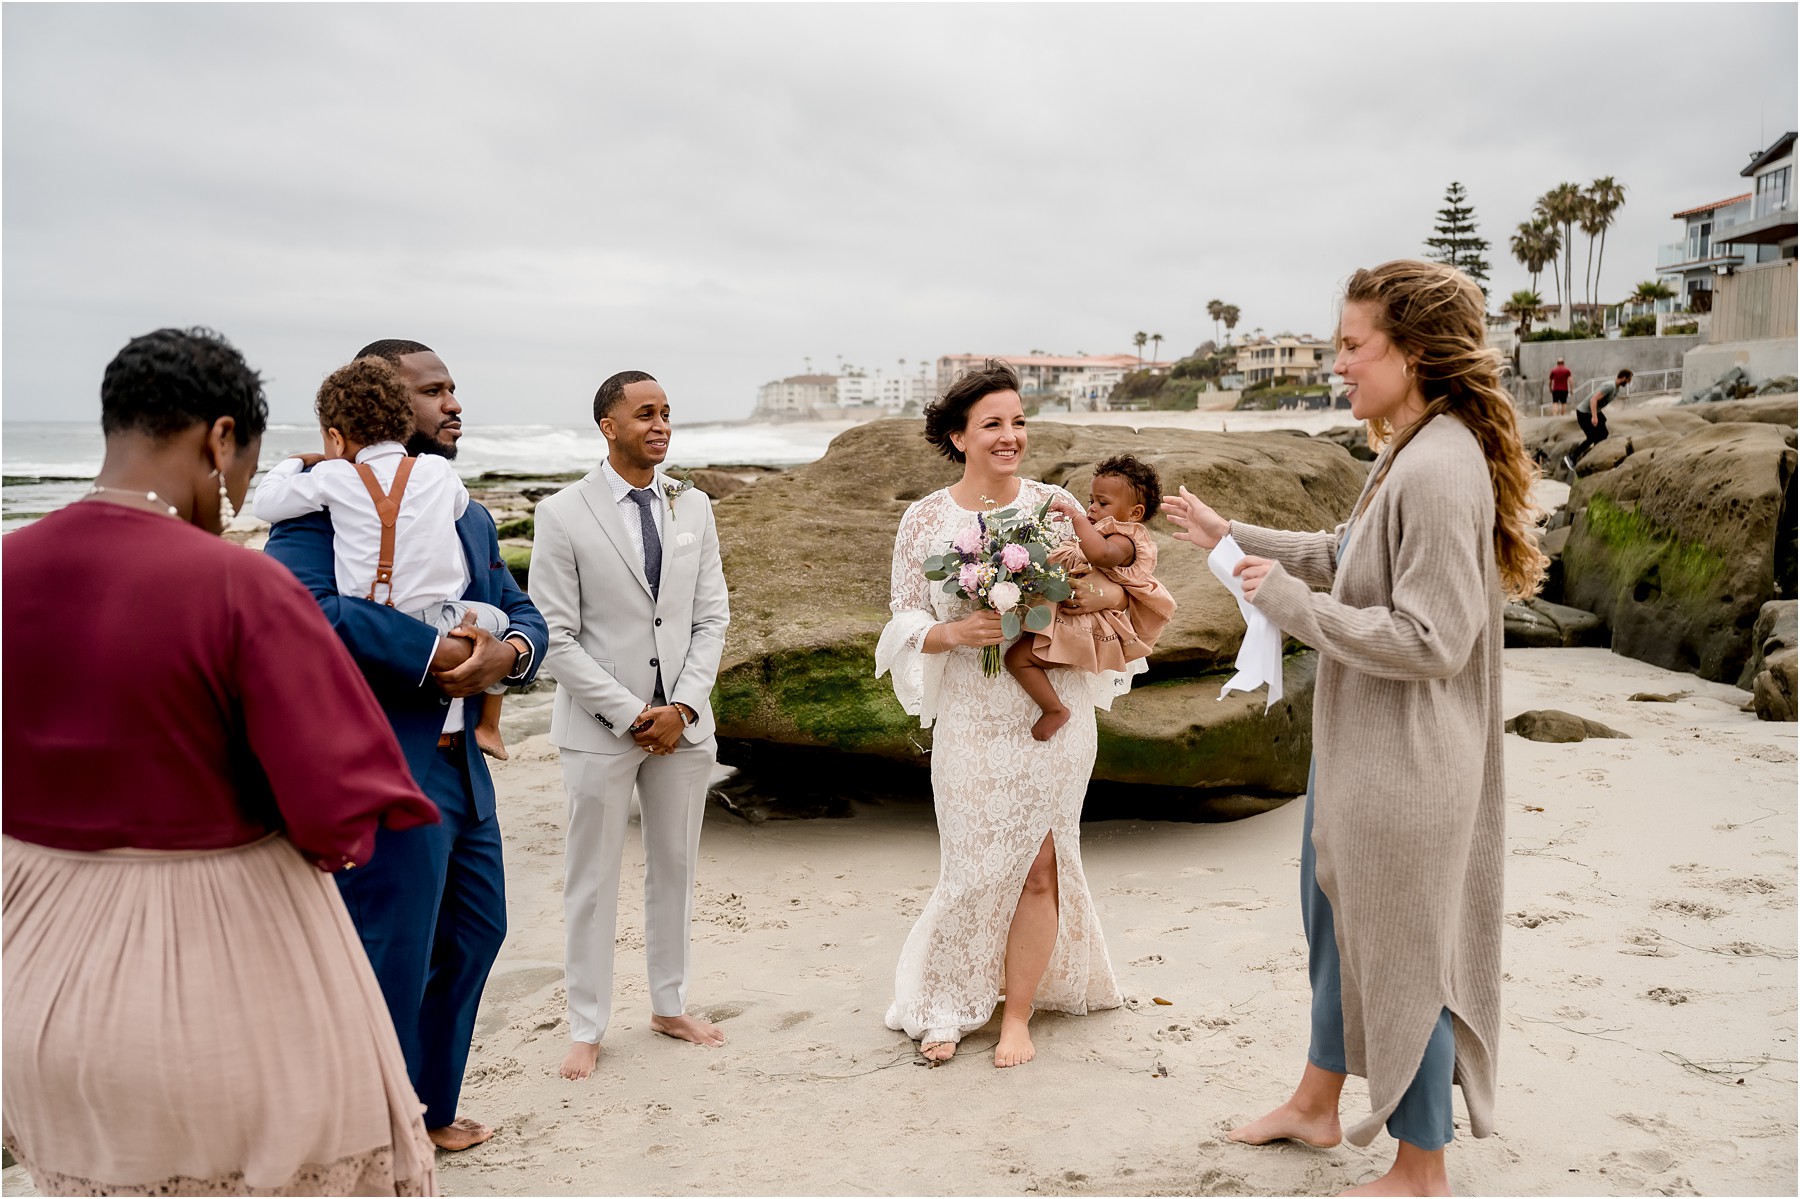 San Diego elopement wedding ceremony at beach